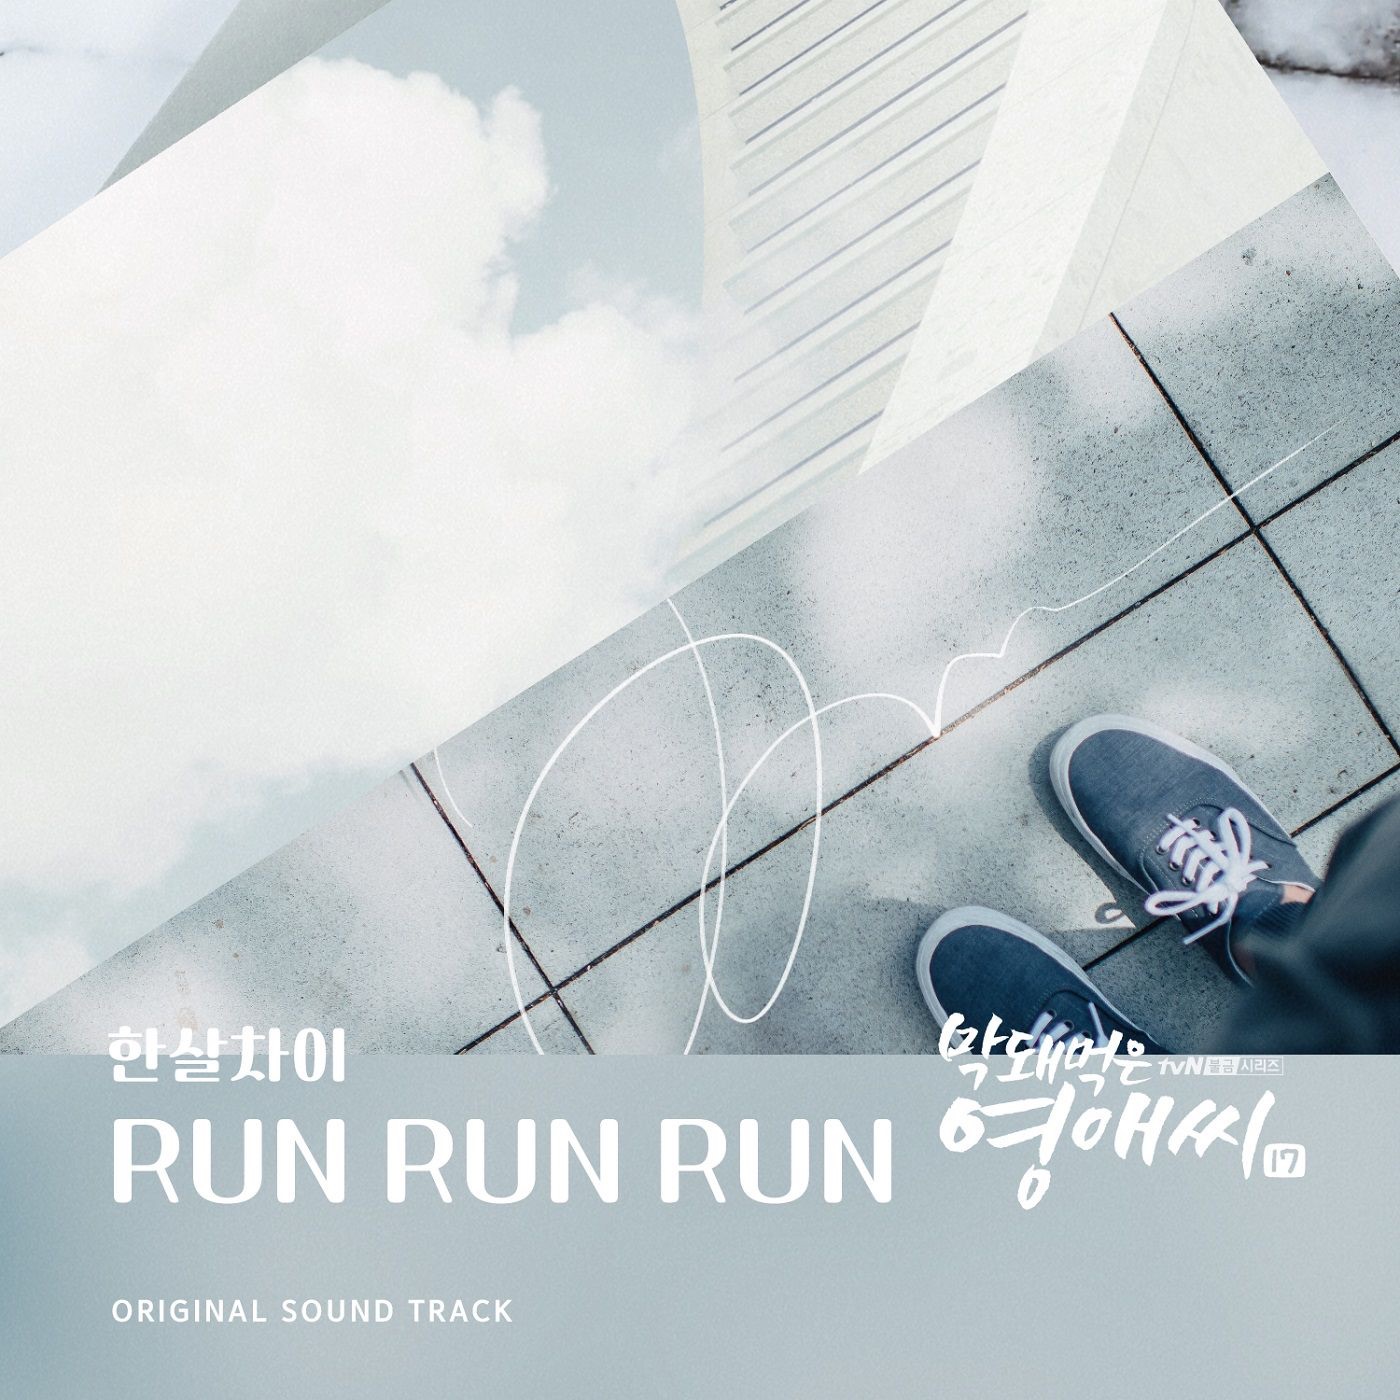 Run soundtrack. Вторник Run Run Run обложка.